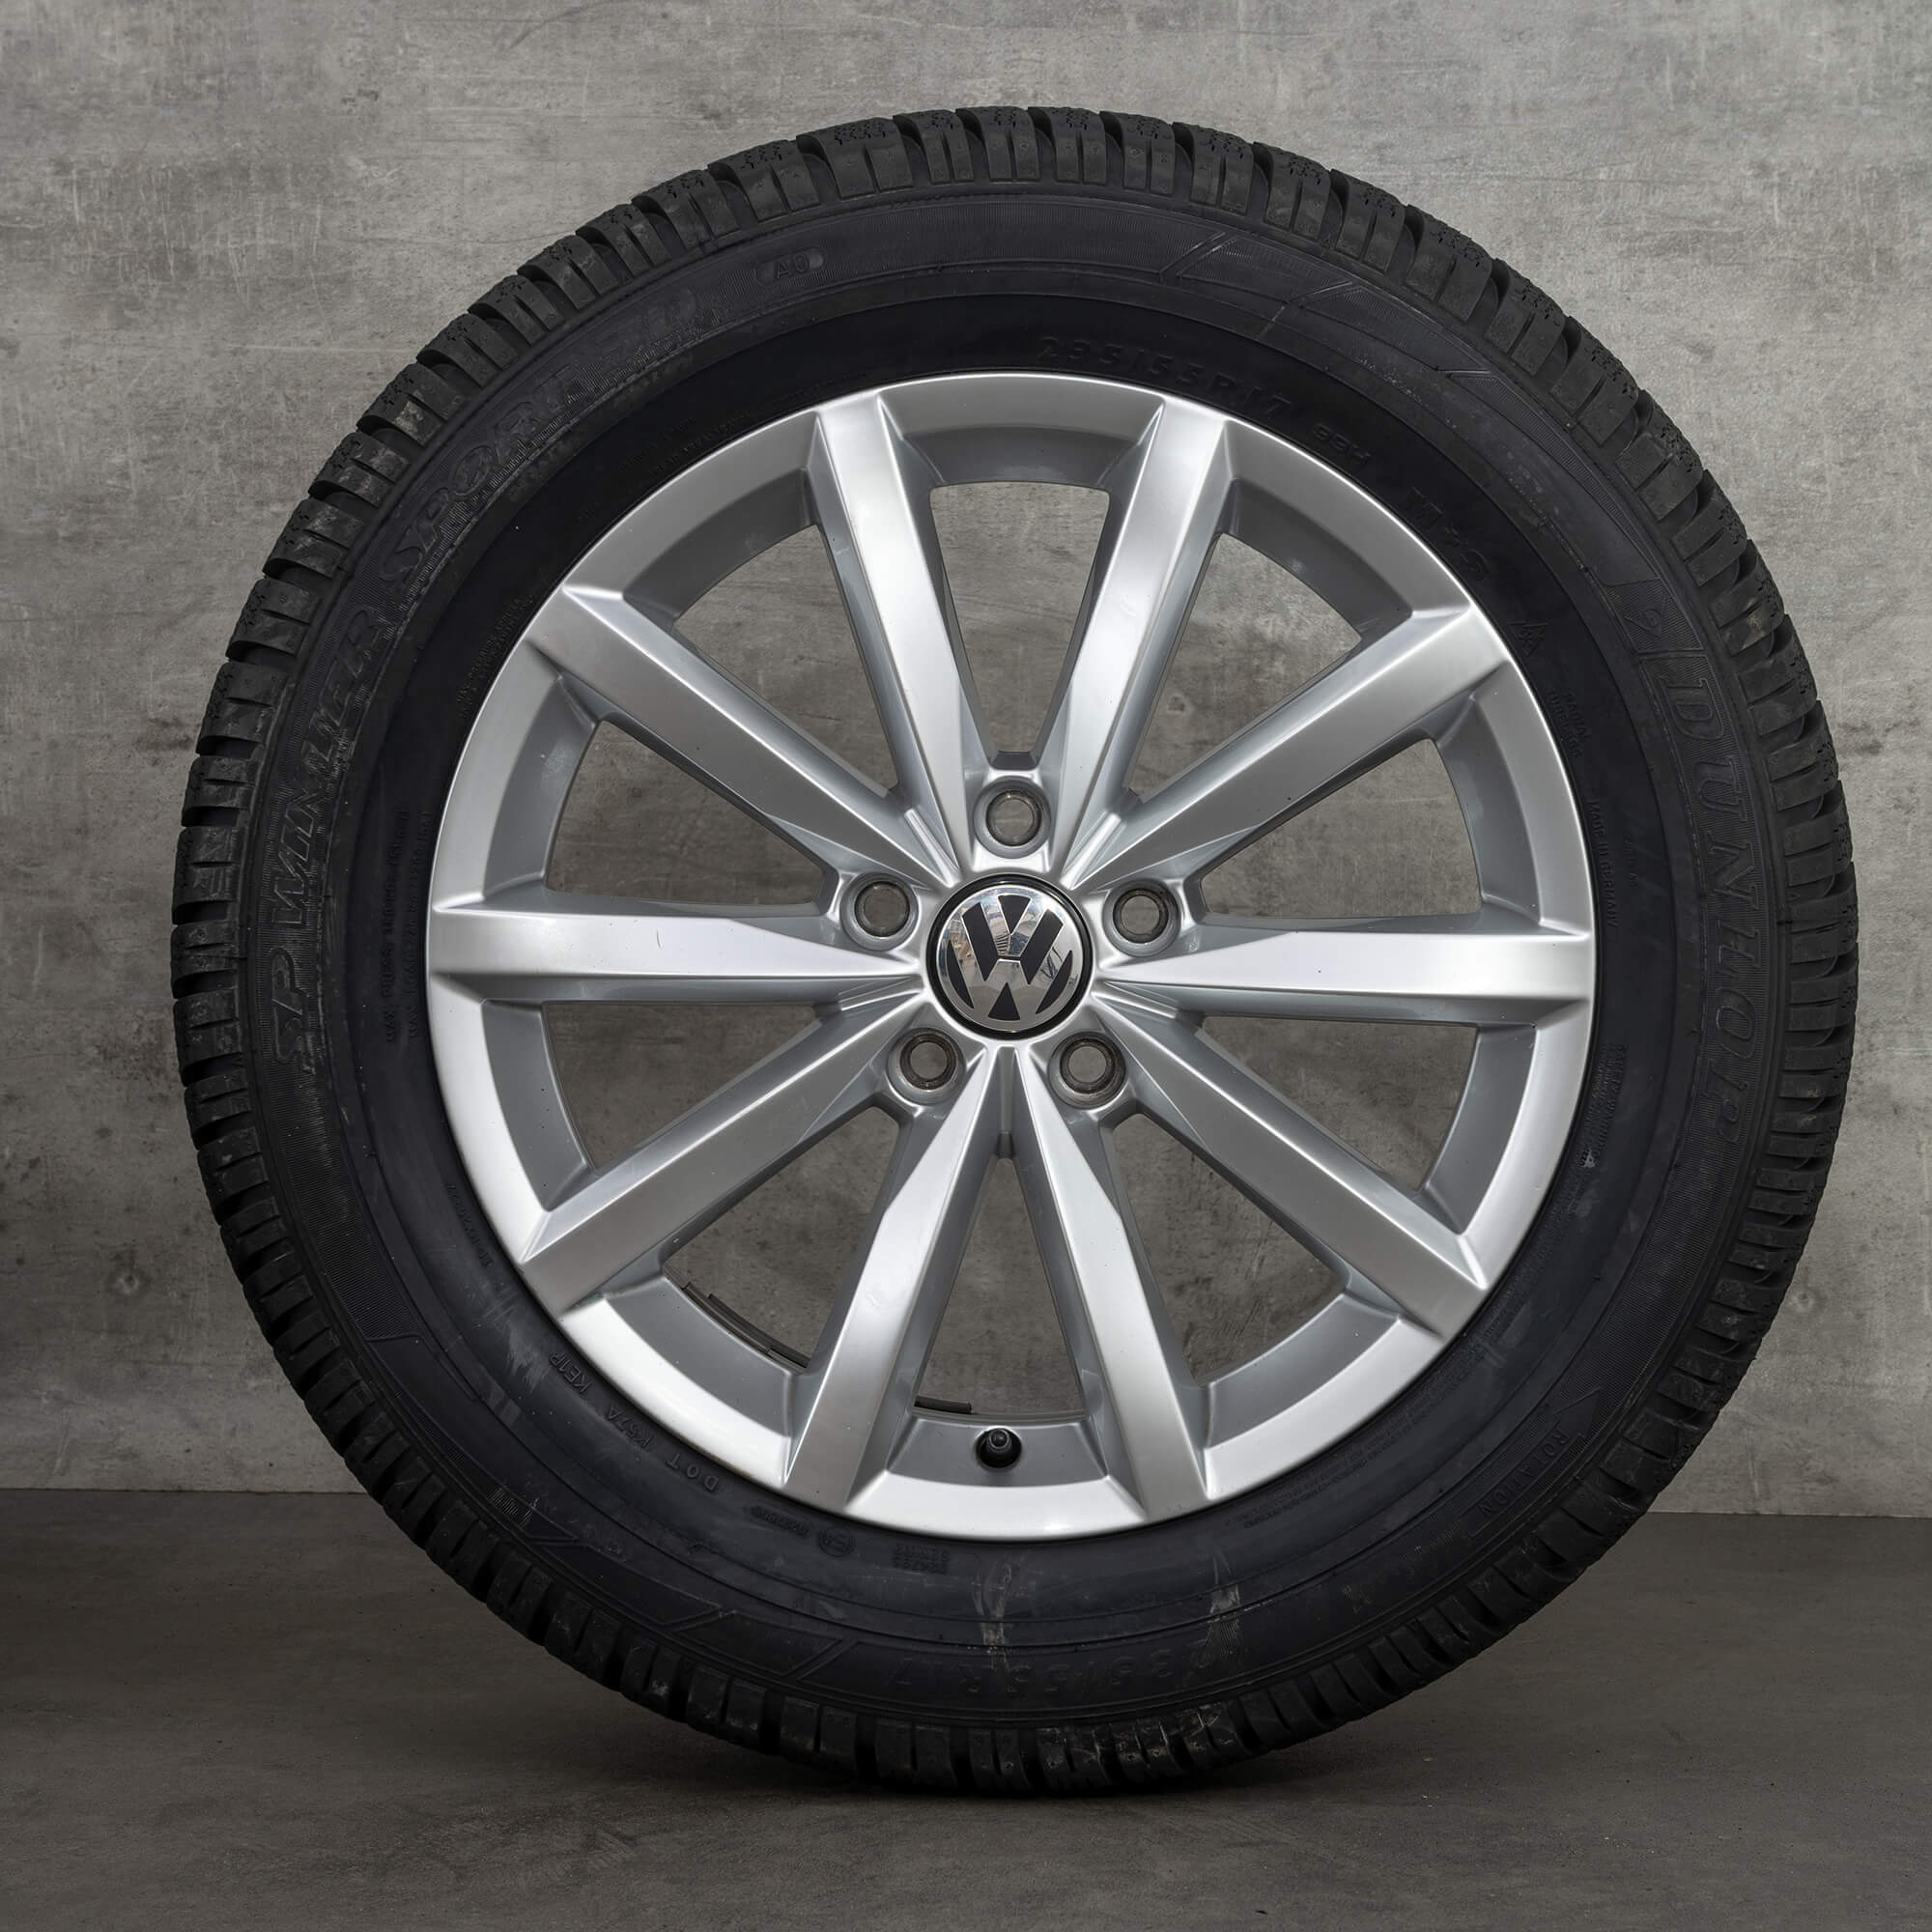 VW llantas de 17 pulgadas Tiguan 5N Novara neumáticos de invierno ruedas de